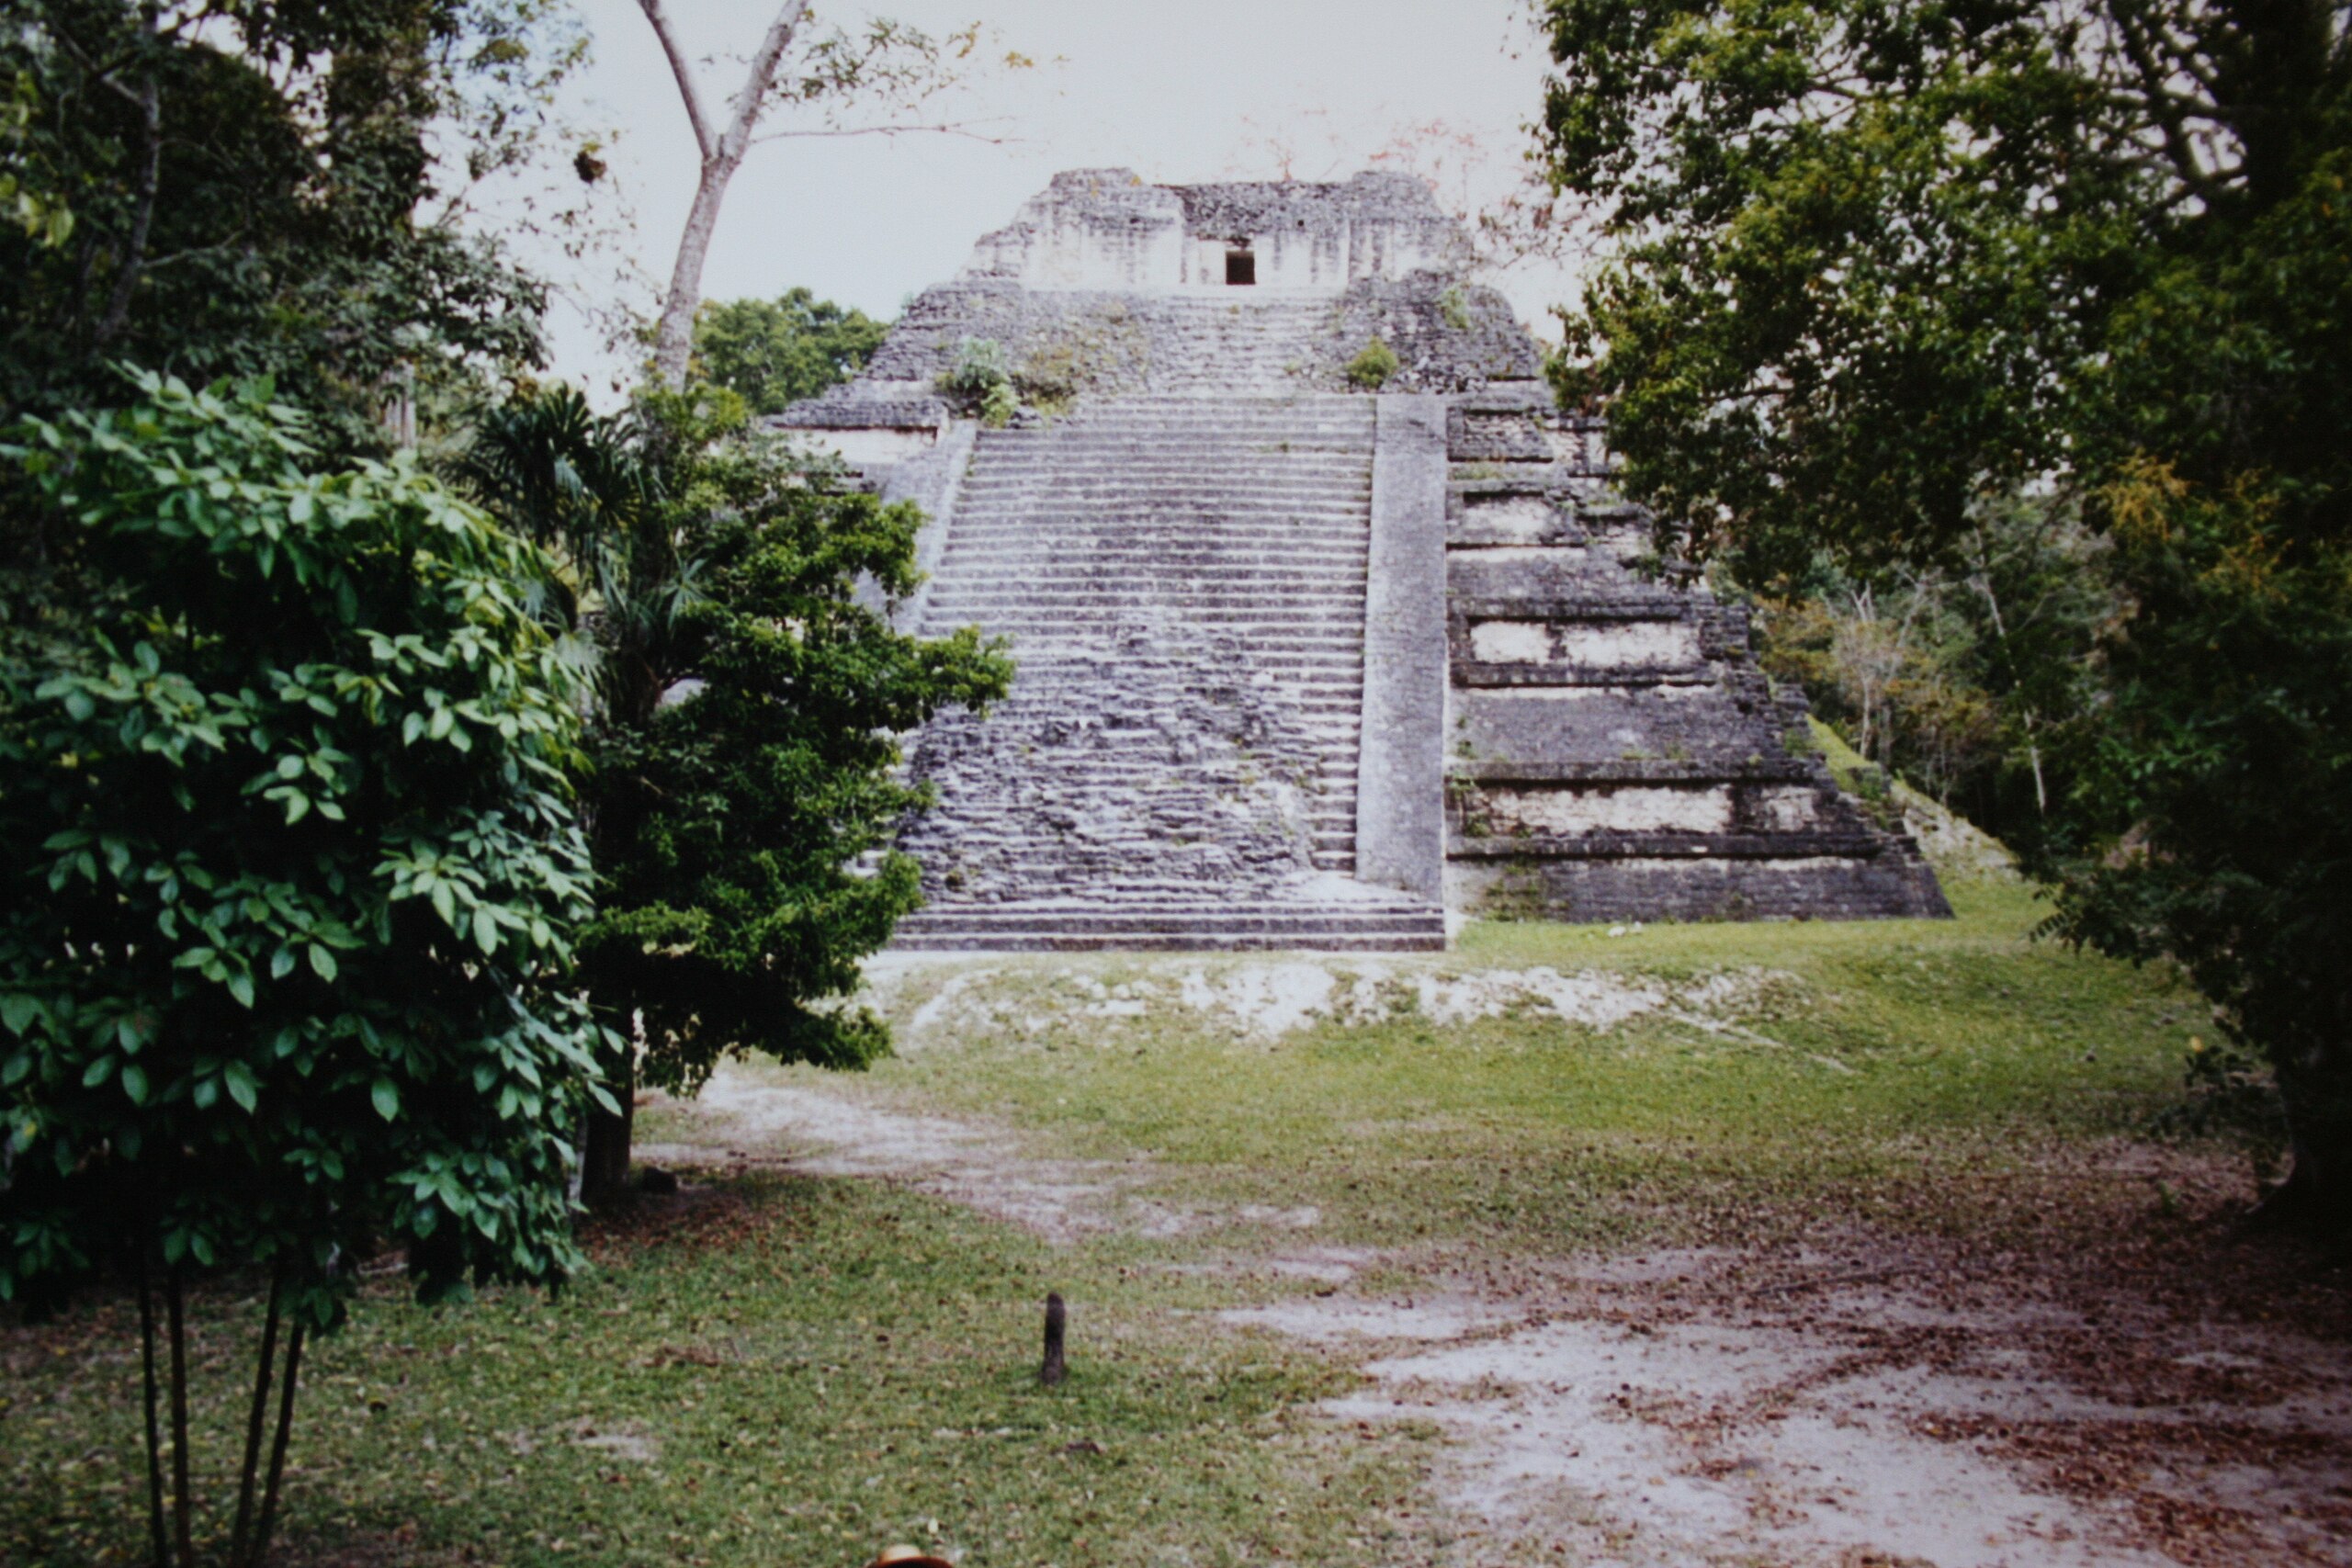 A Tikal pyramid